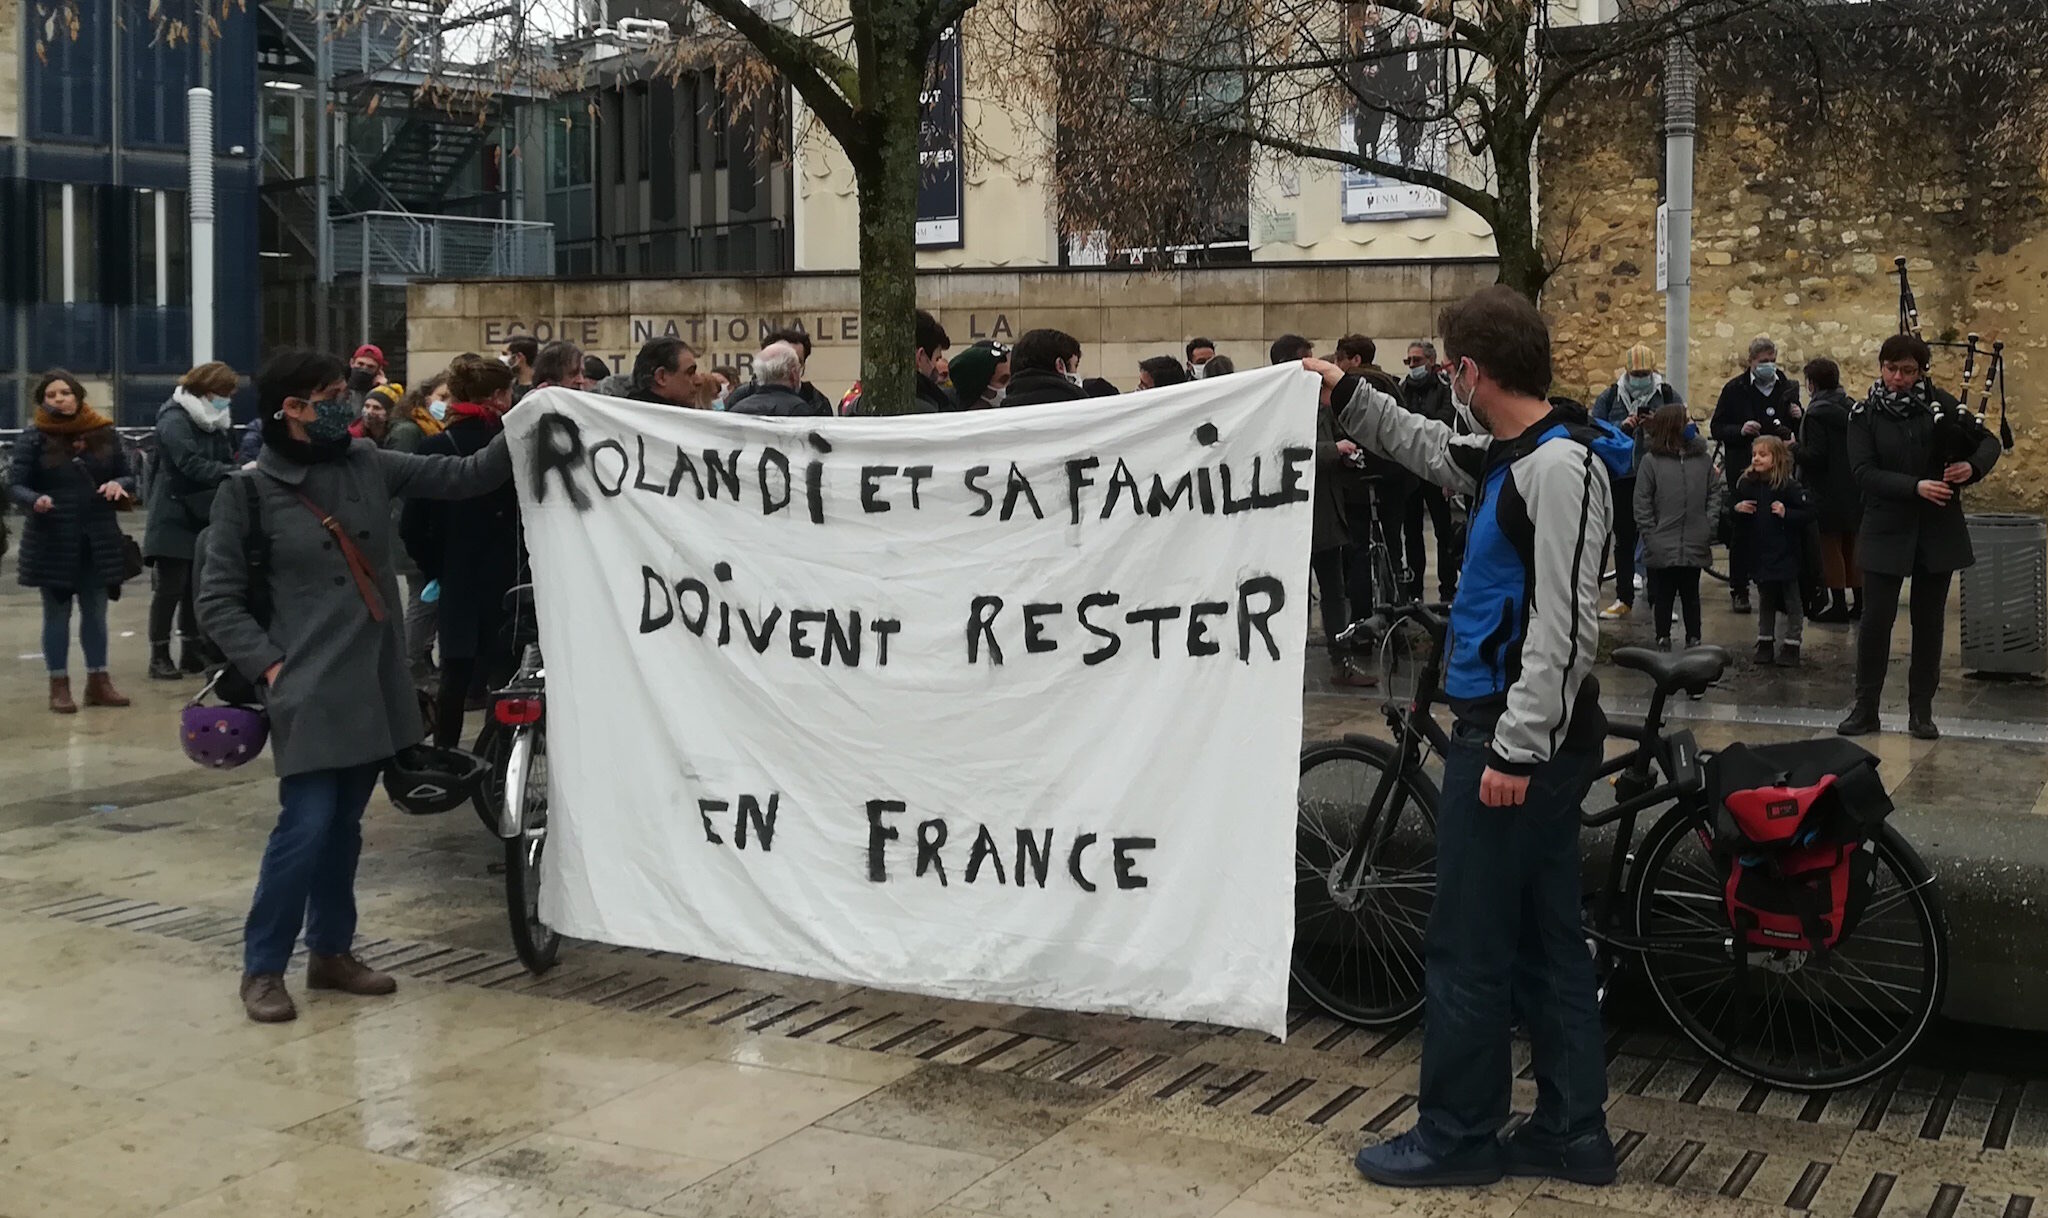 La préfecture de la Gironde maintient l’expulsion de Rolandi, une décision « indigne » pour ses soutiens